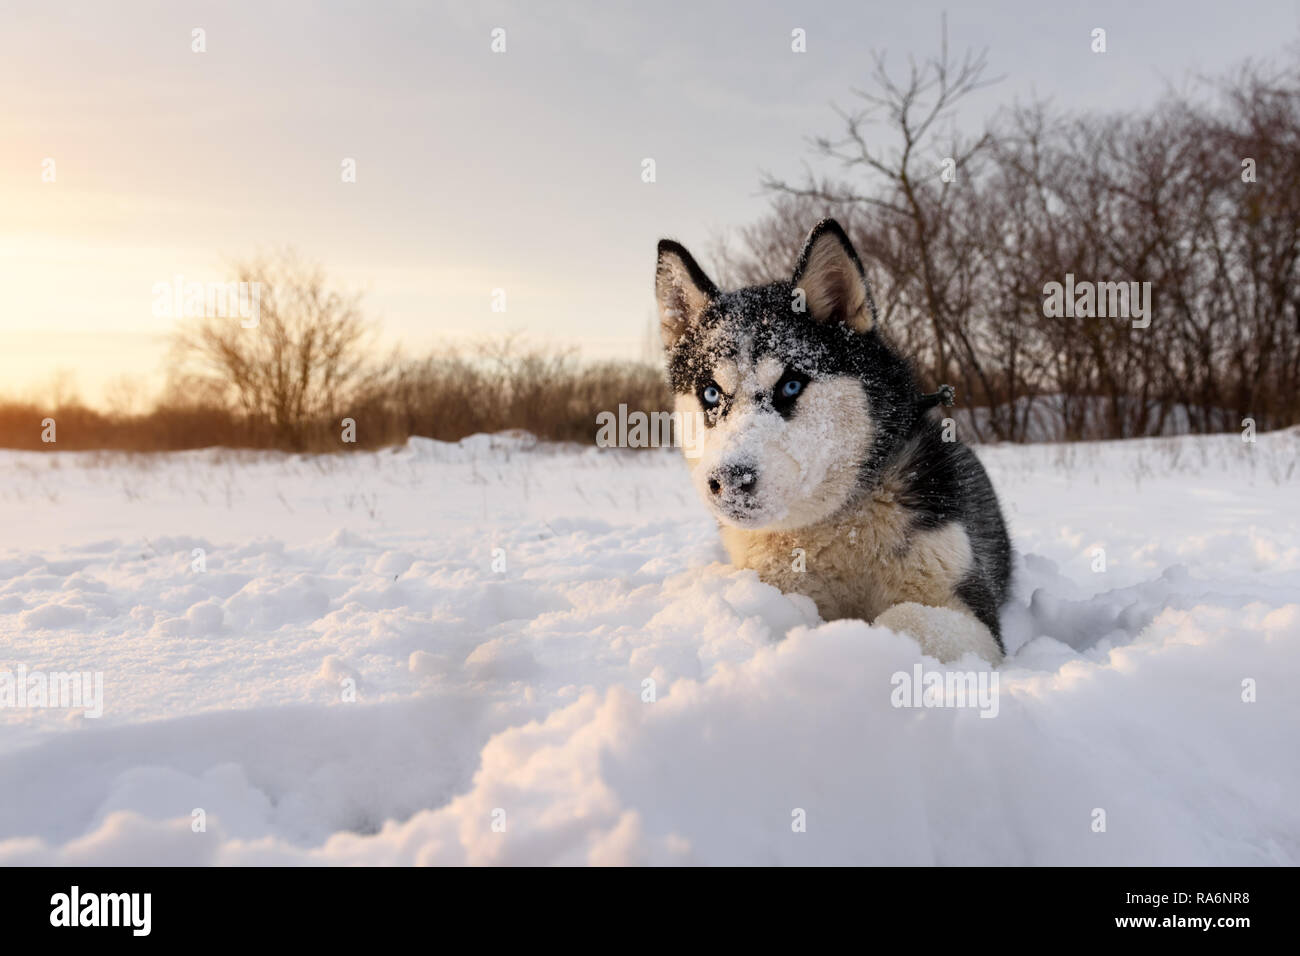 Siberian Husky cane a giocare sul campo d'inverno. Happy puppy in soffice neve. Fotografia degli animali Foto Stock